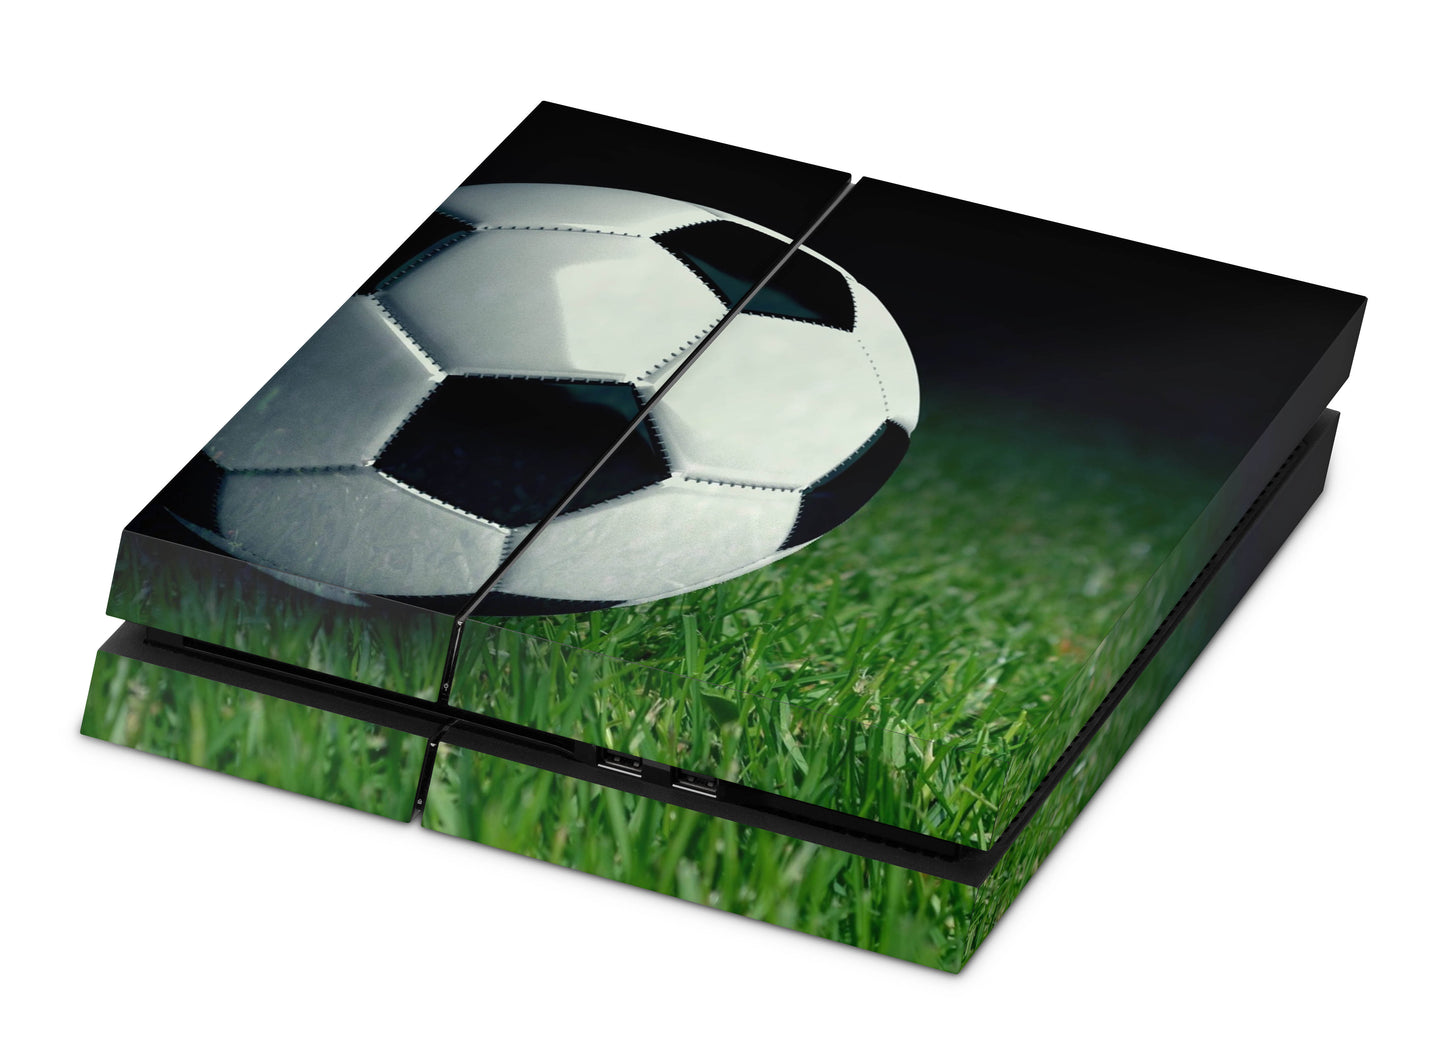 Playstation 4 Skin & Wrap Design Aufkleber Folie für PS4 Konsole 1.Generation soccer Aufkleber skins4u   